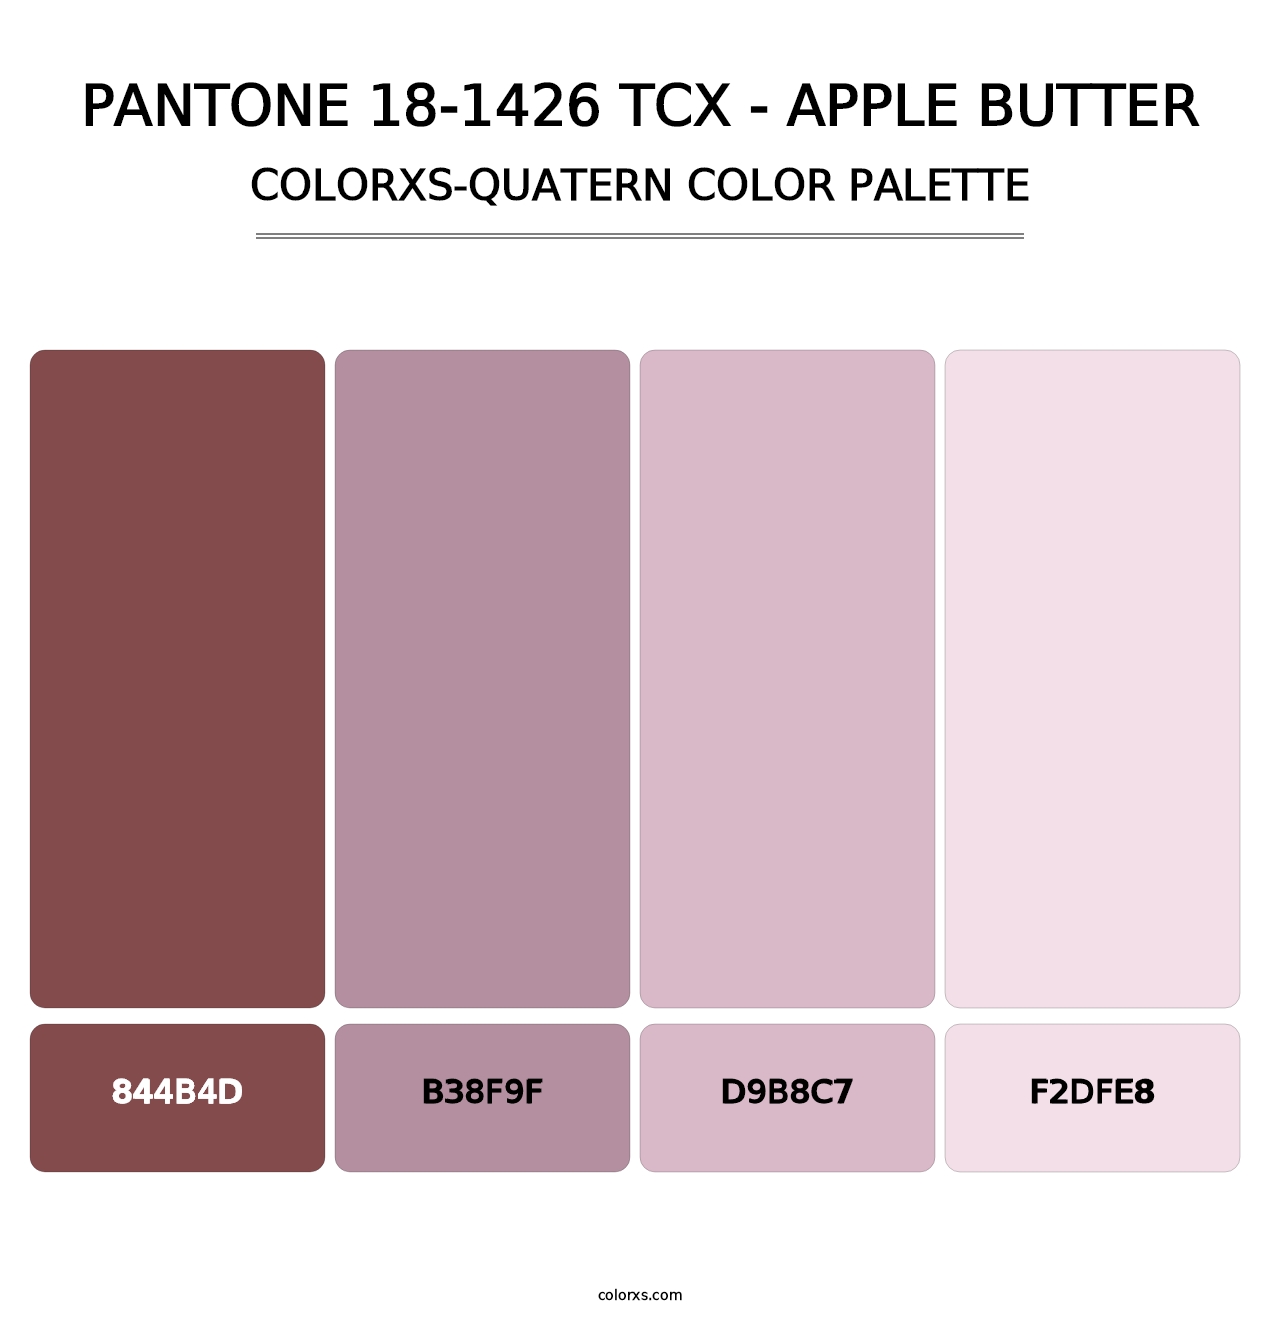 PANTONE 18-1426 TCX - Apple Butter - Colorxs Quatern Palette